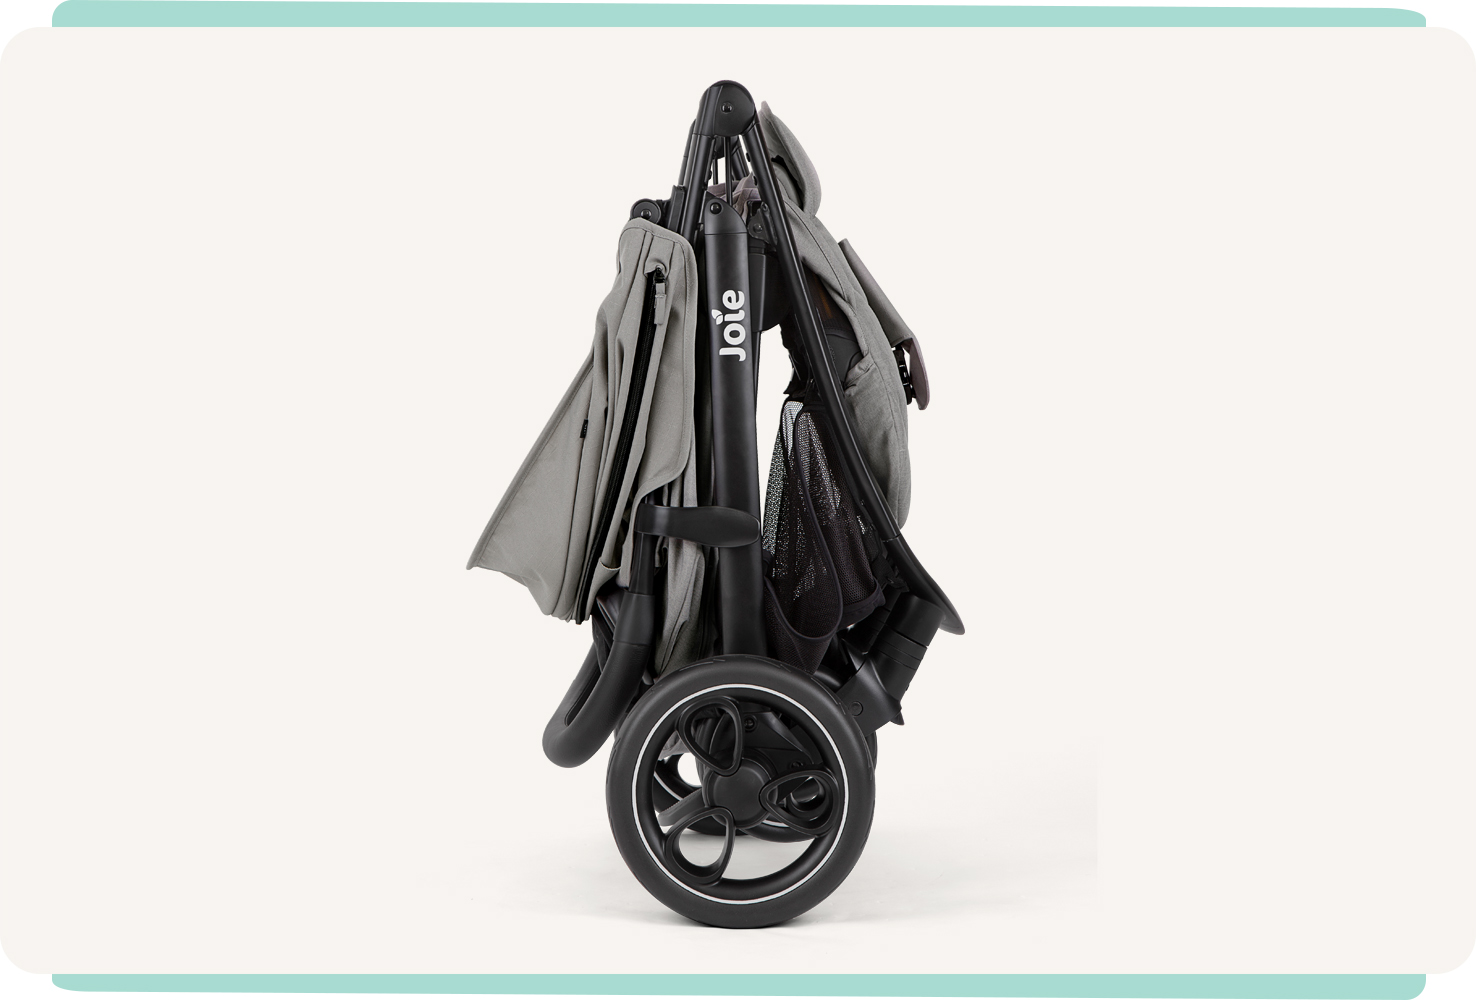 JoIe gray litetrax stroller folded. Joie litetrax pro Kinderwagen in grau gefaltet.